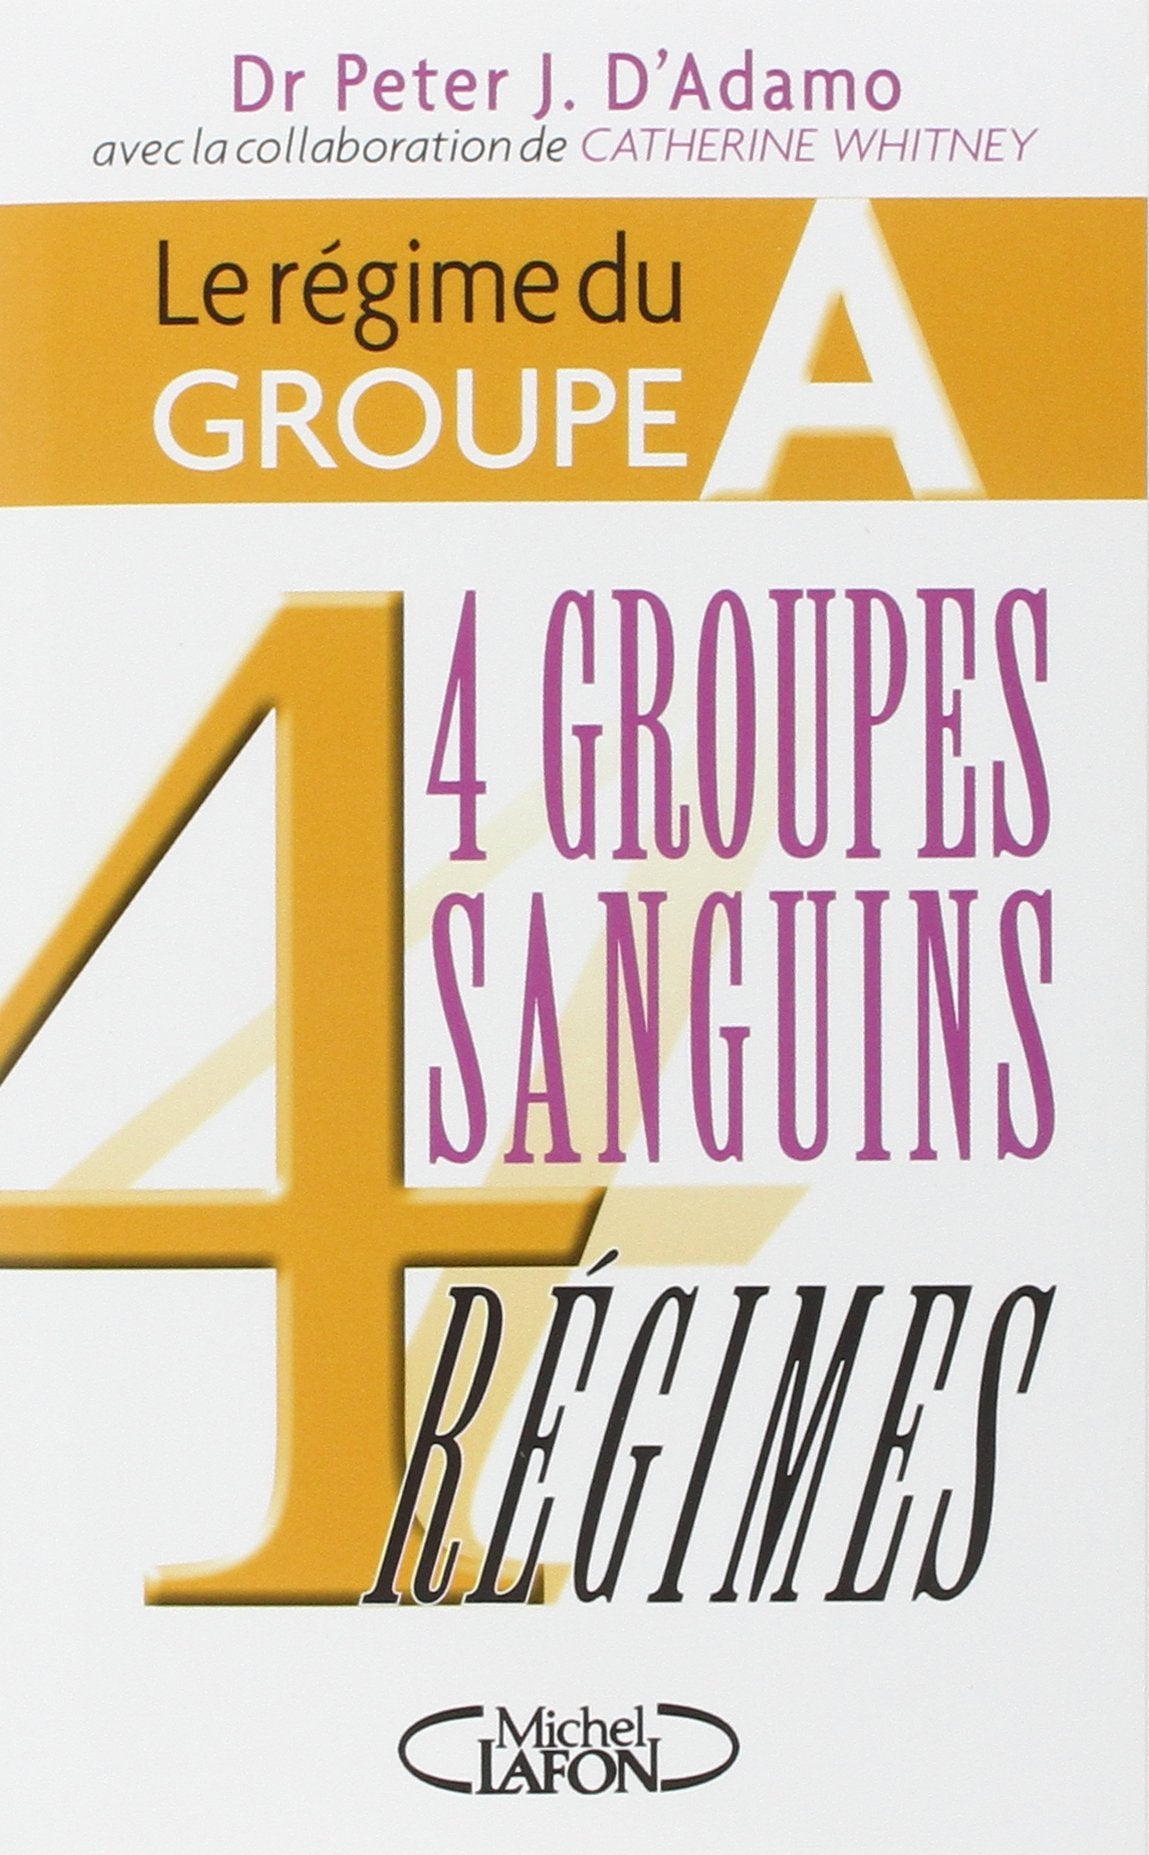 Livre ISBN 2840989433 4 Groupes sanguins, 4 régimes : Le régime du groupe A (Dr Peter J. D'Adamo)